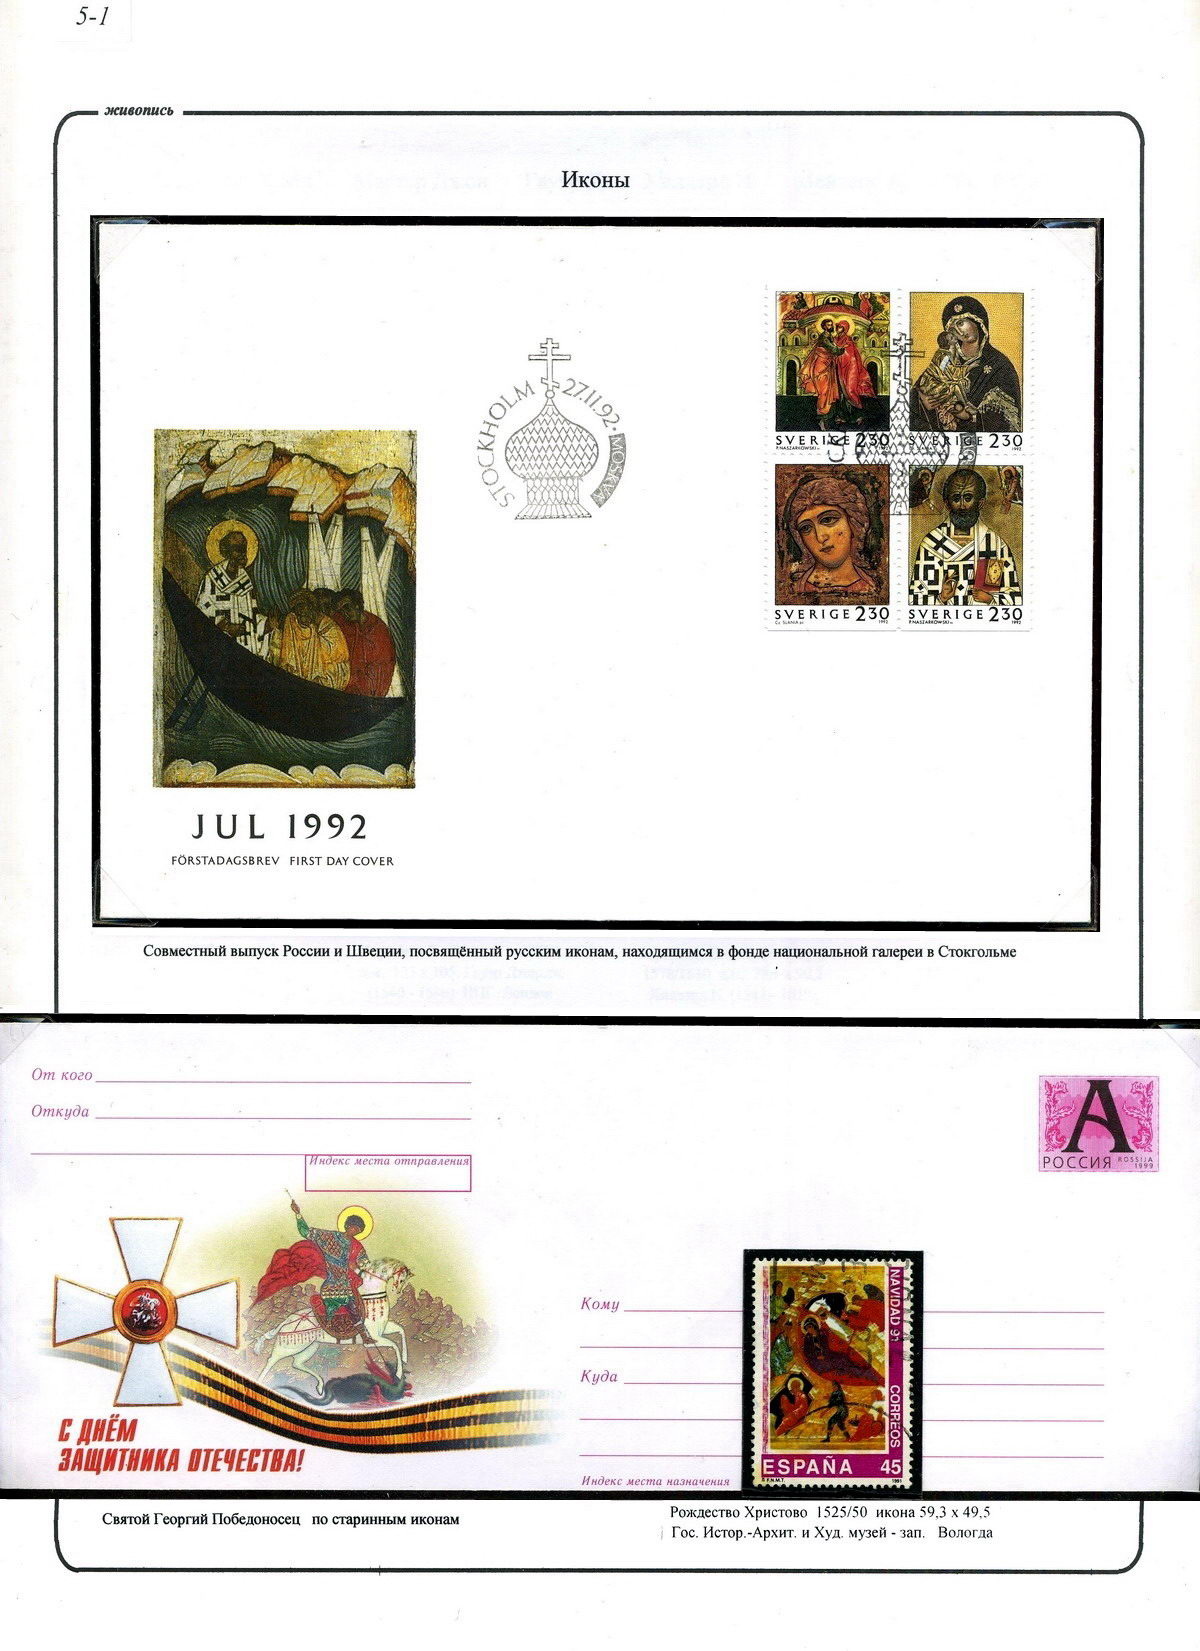 русские иконы в Швеции, святой Георгий, лист стенда